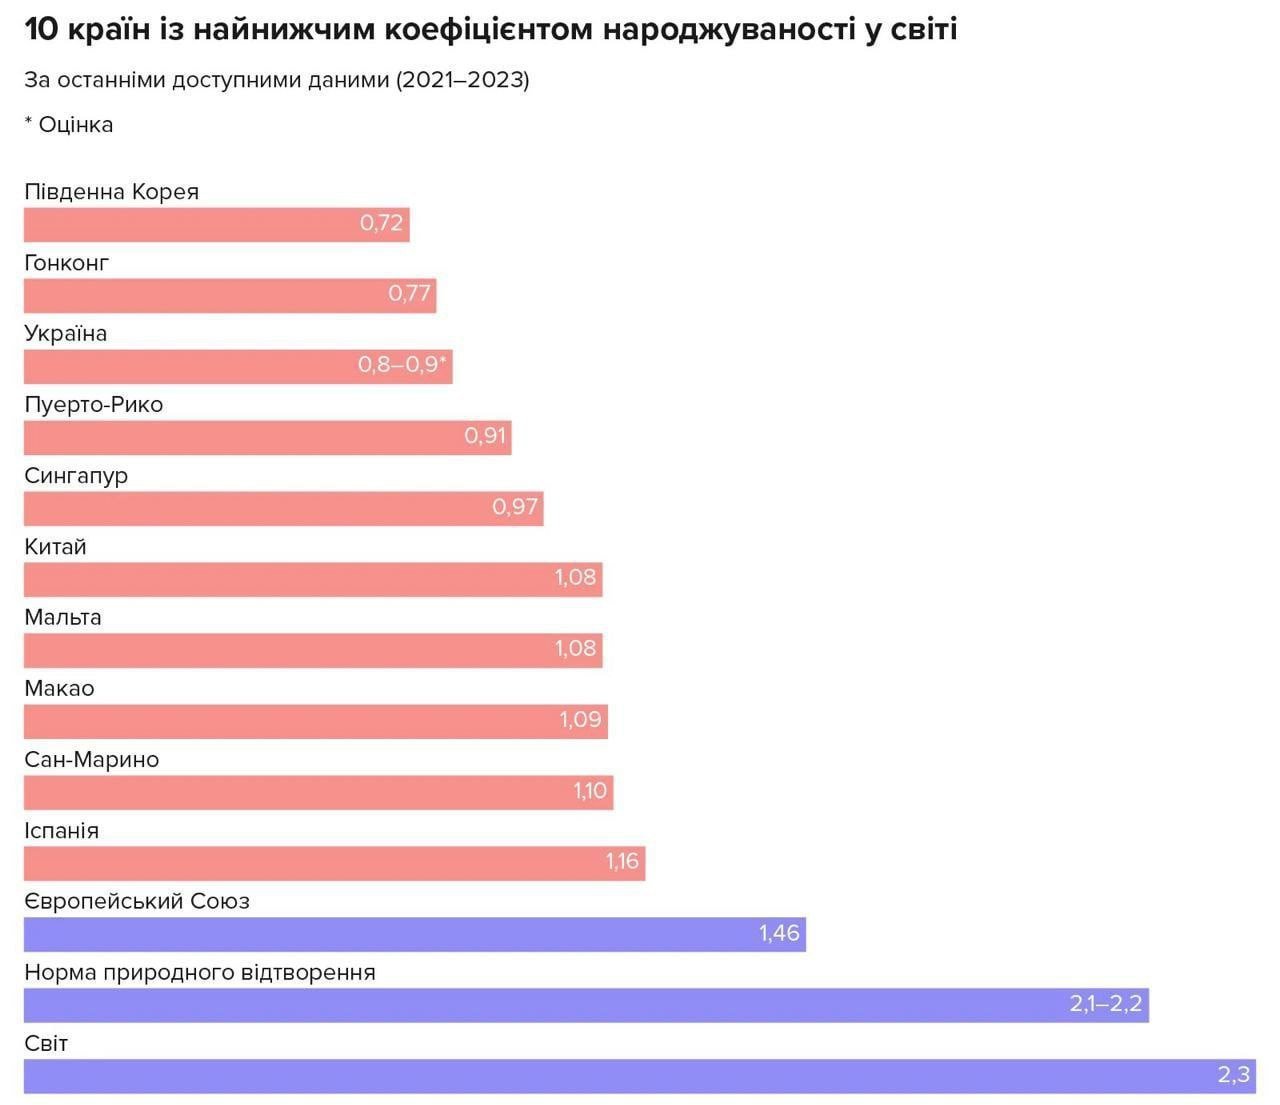 Найнижчий показник народжуваності в Україні